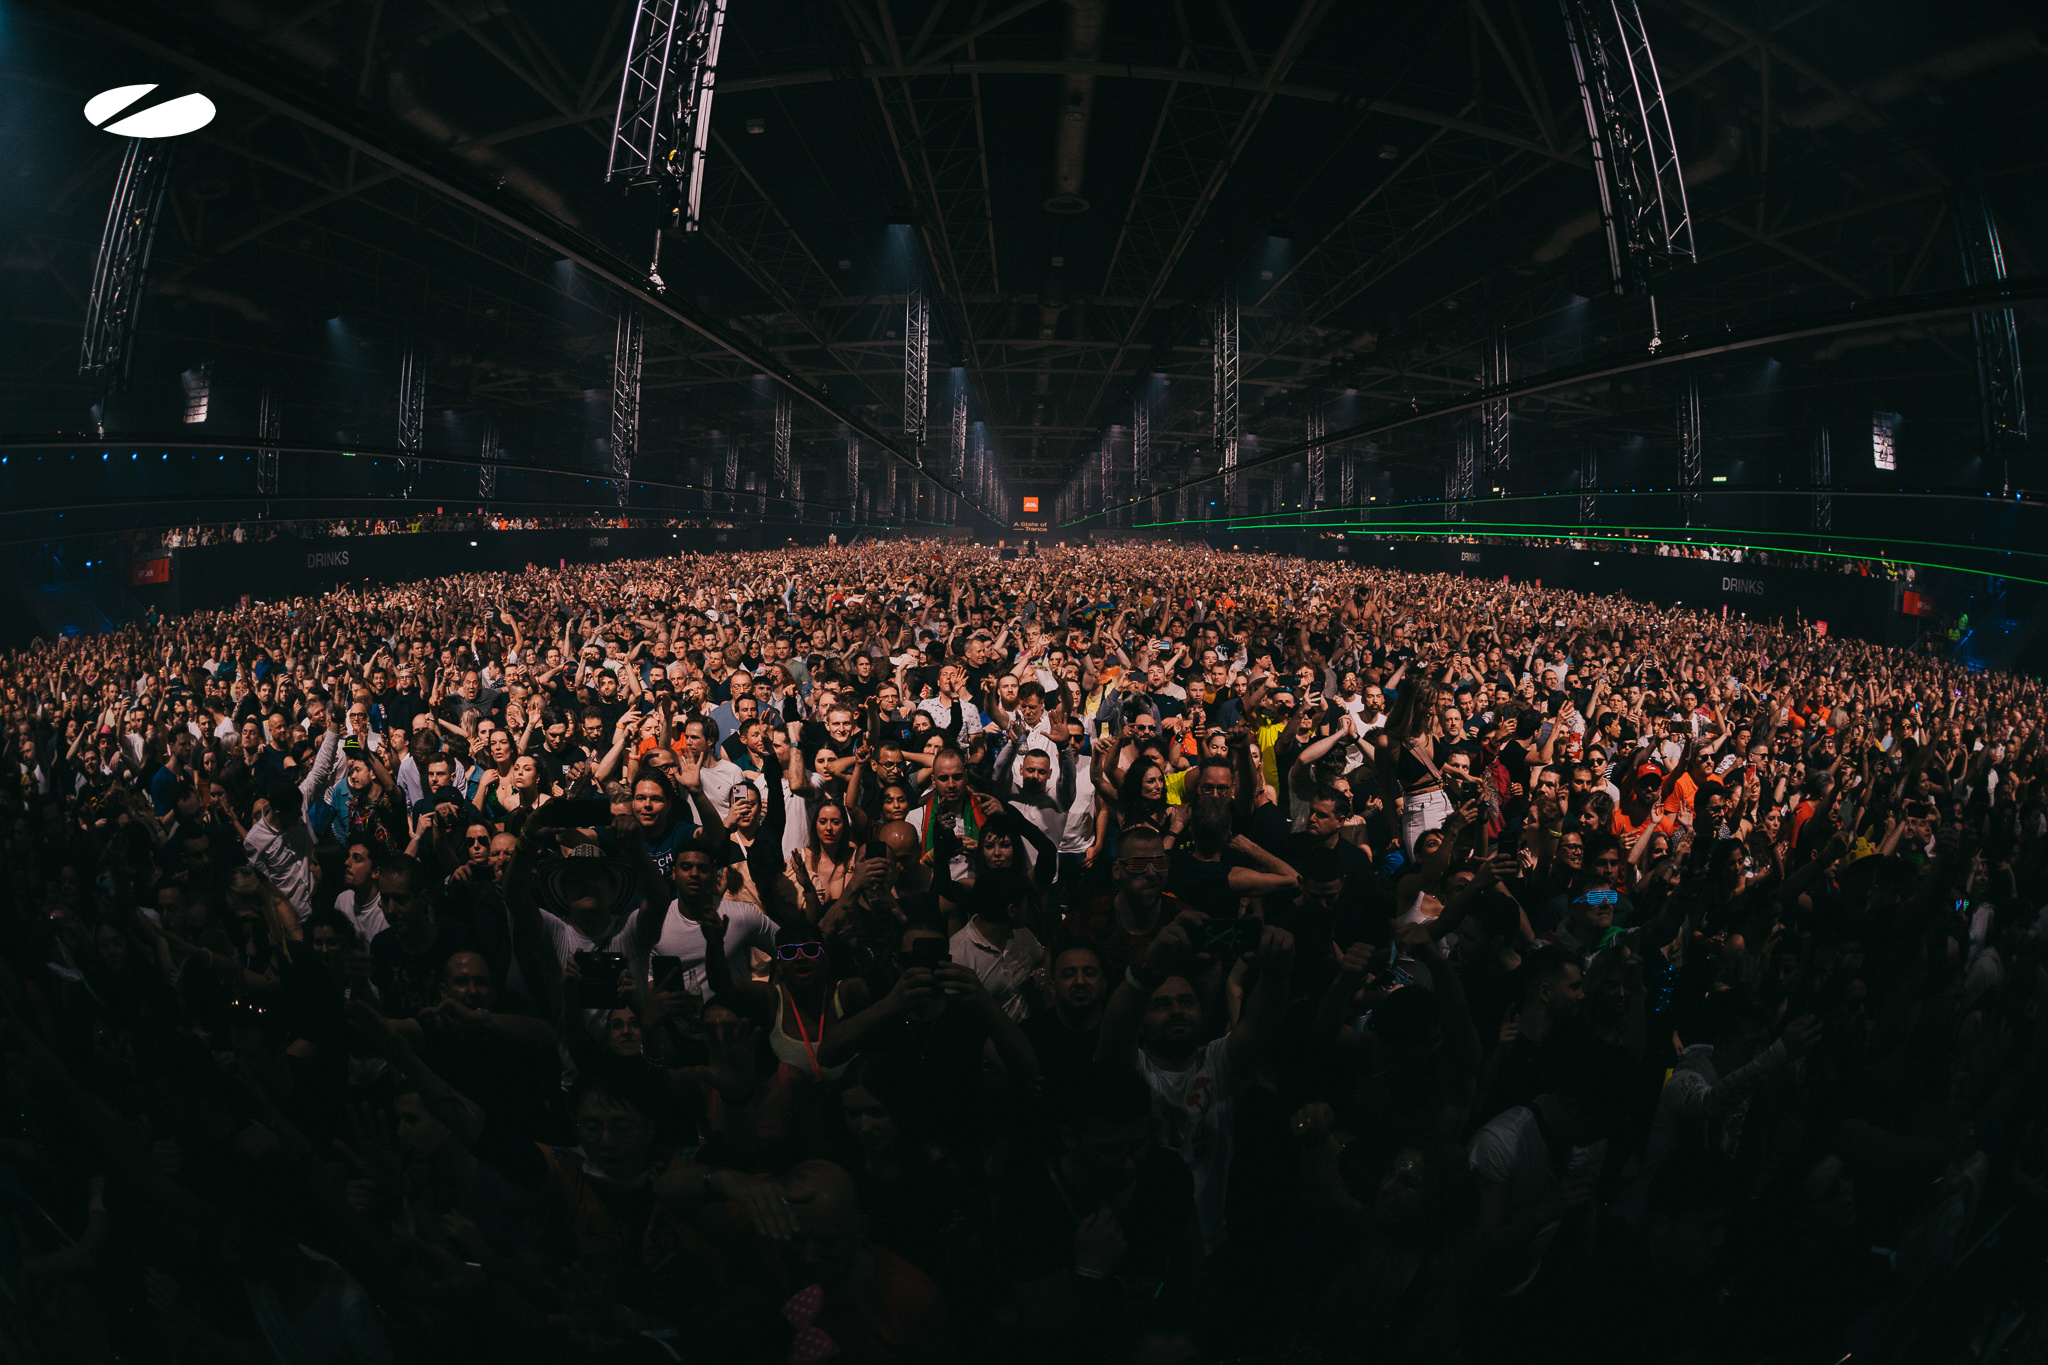 Диджей из Читы MatricK отыграл на масштабном фестивале A State Of Trance в Амстердаме